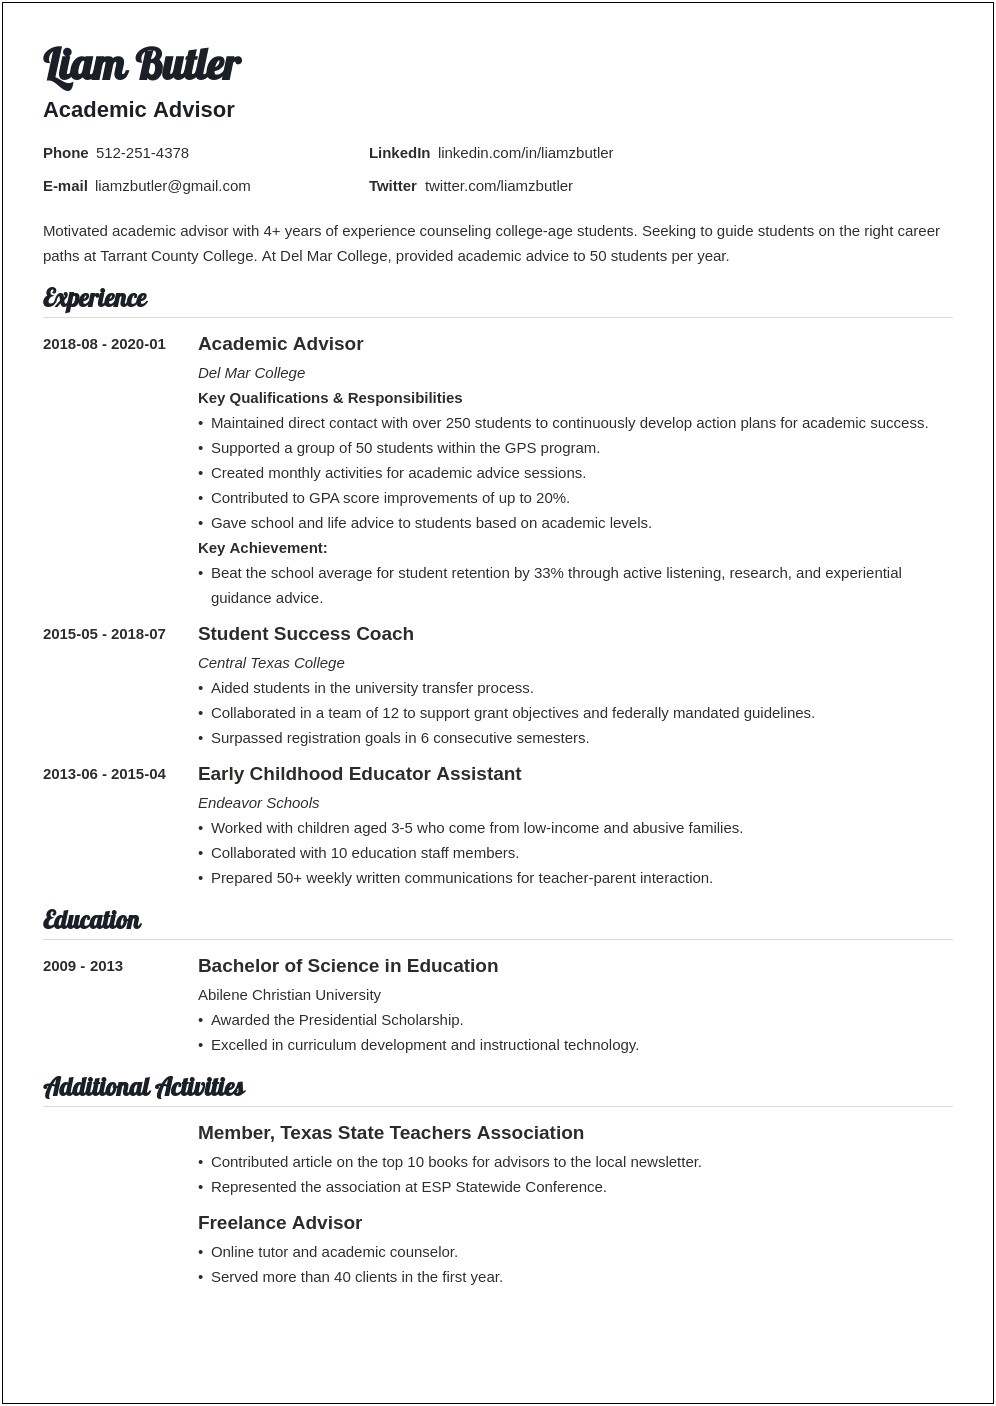 Sample Resume For College Academic Advisor